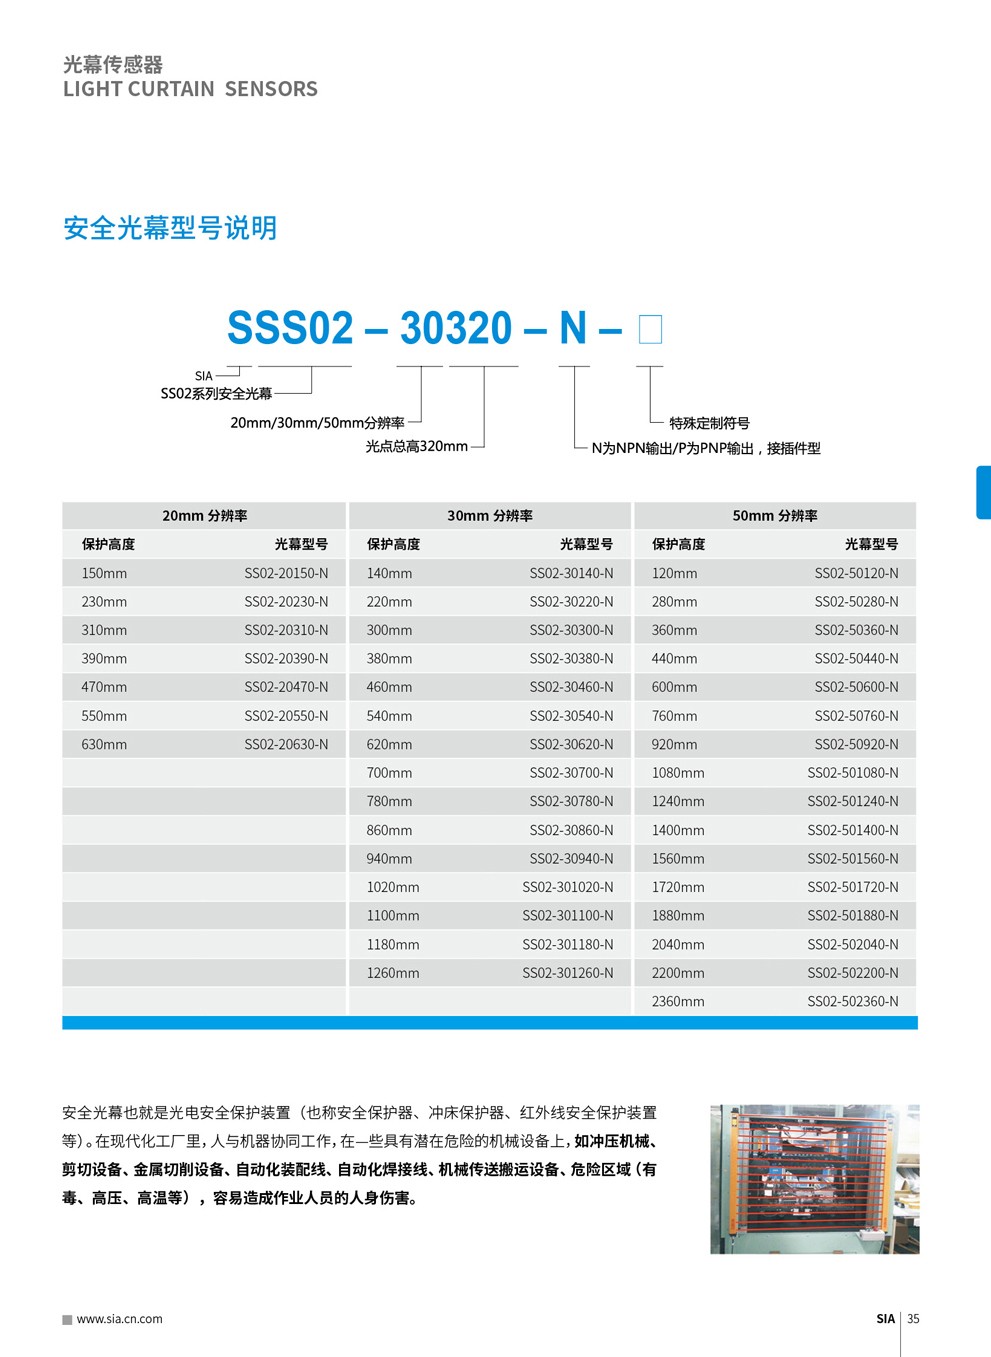 思革尔工业自动化（上海）有限公司 Secure Industrial Automation (Shanghai) Co., Ltd.